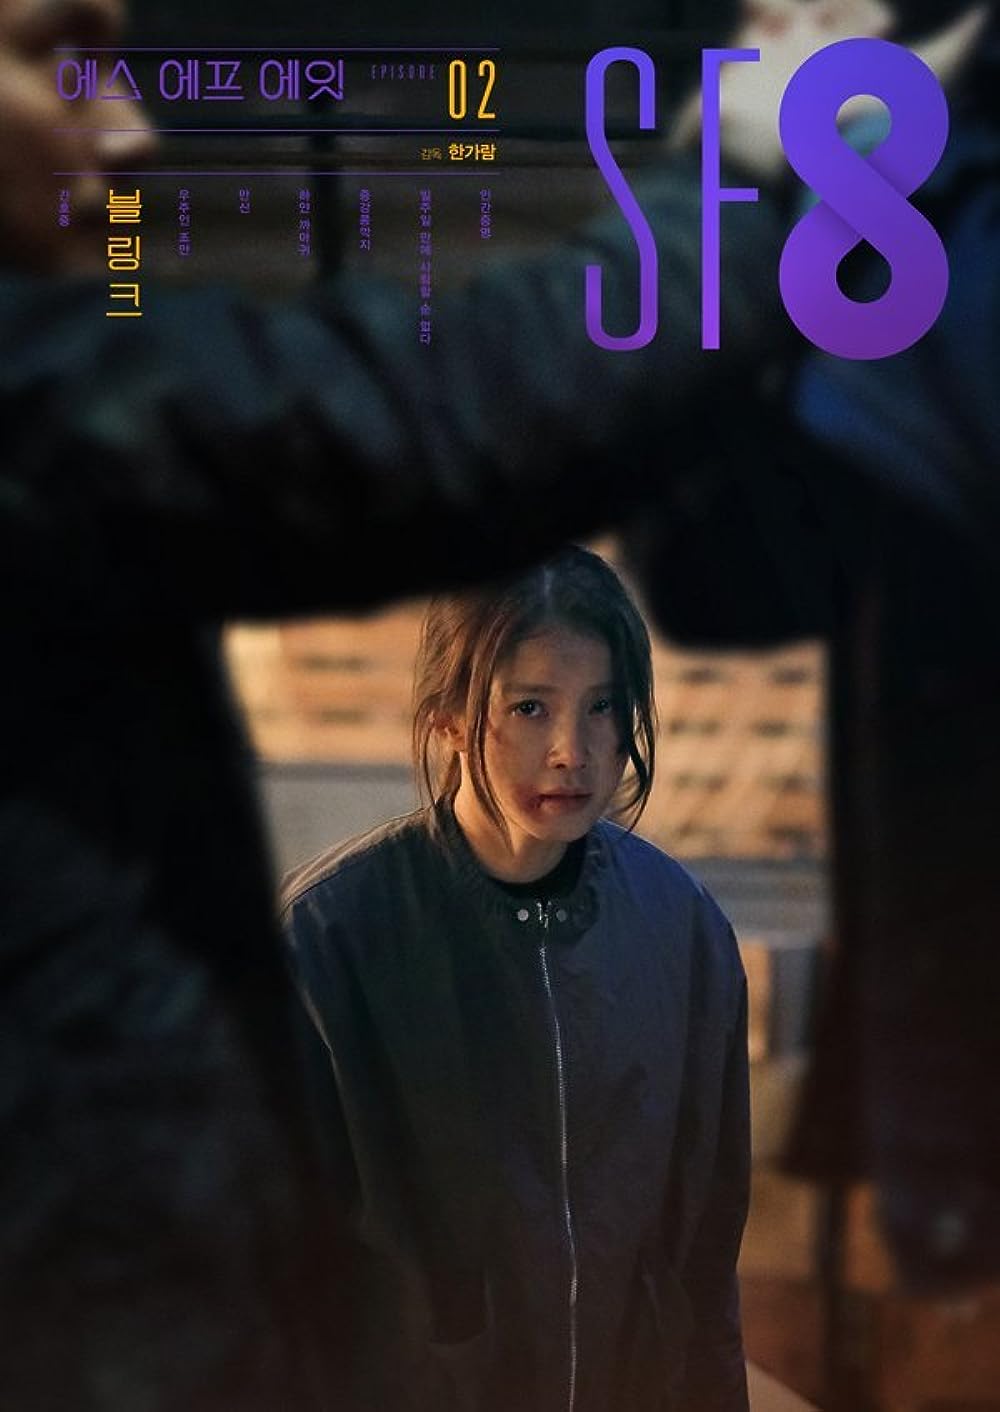 Lee Si Young phim: Thí nghiệm: Đối tác trong mơ - SF8: Blink (2020)